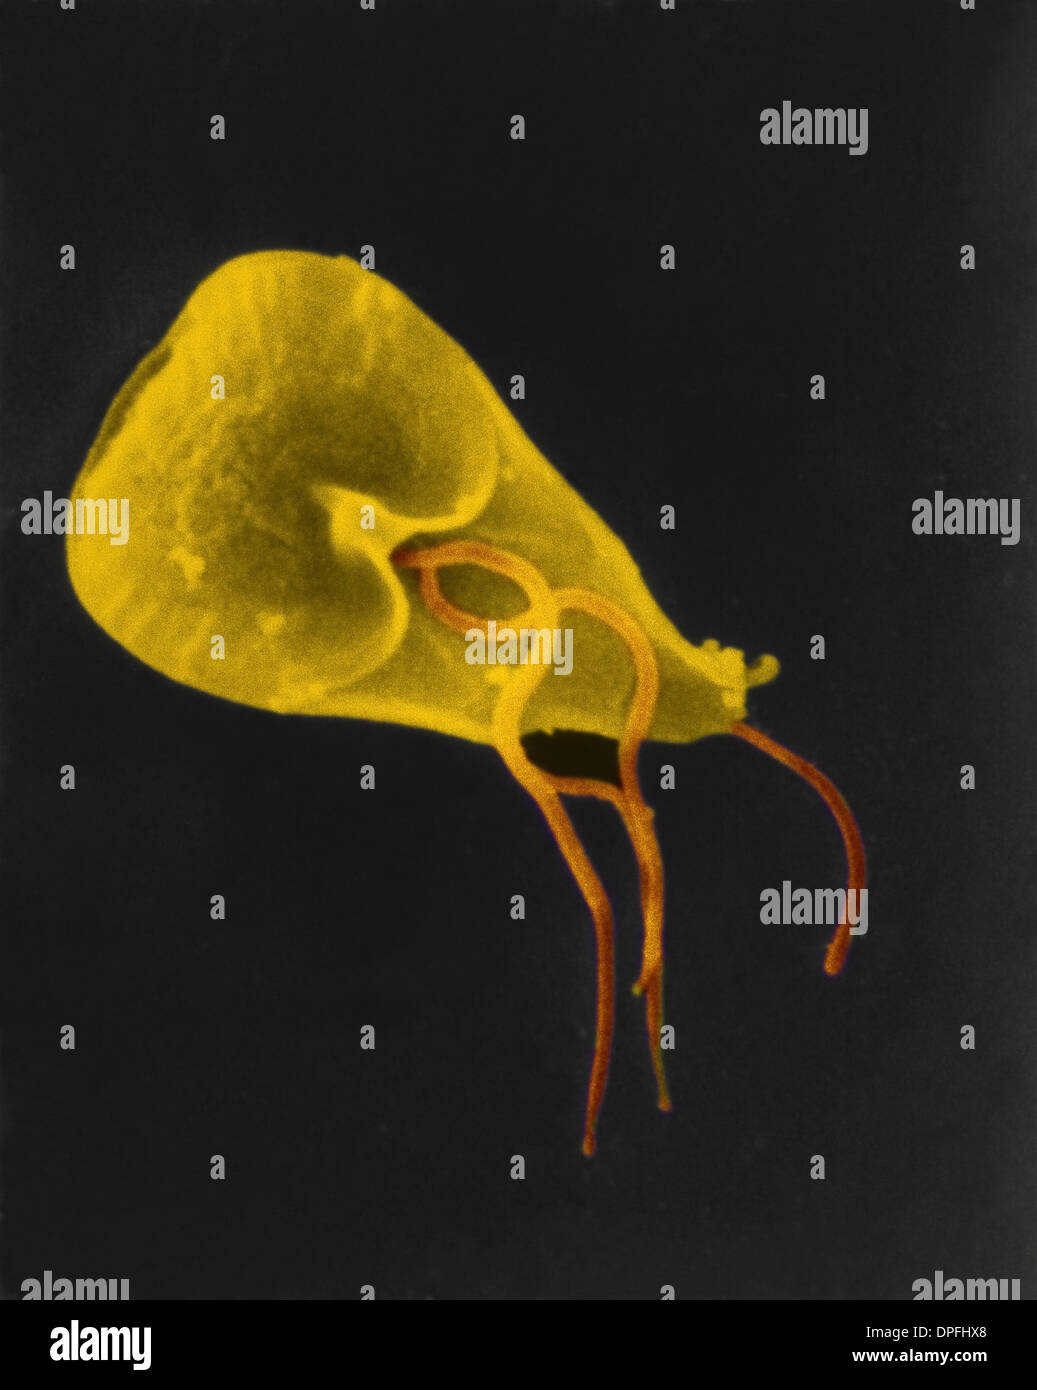 SEM eine geißelbesetzten Giardia Lamblia Protozoen Stockfoto